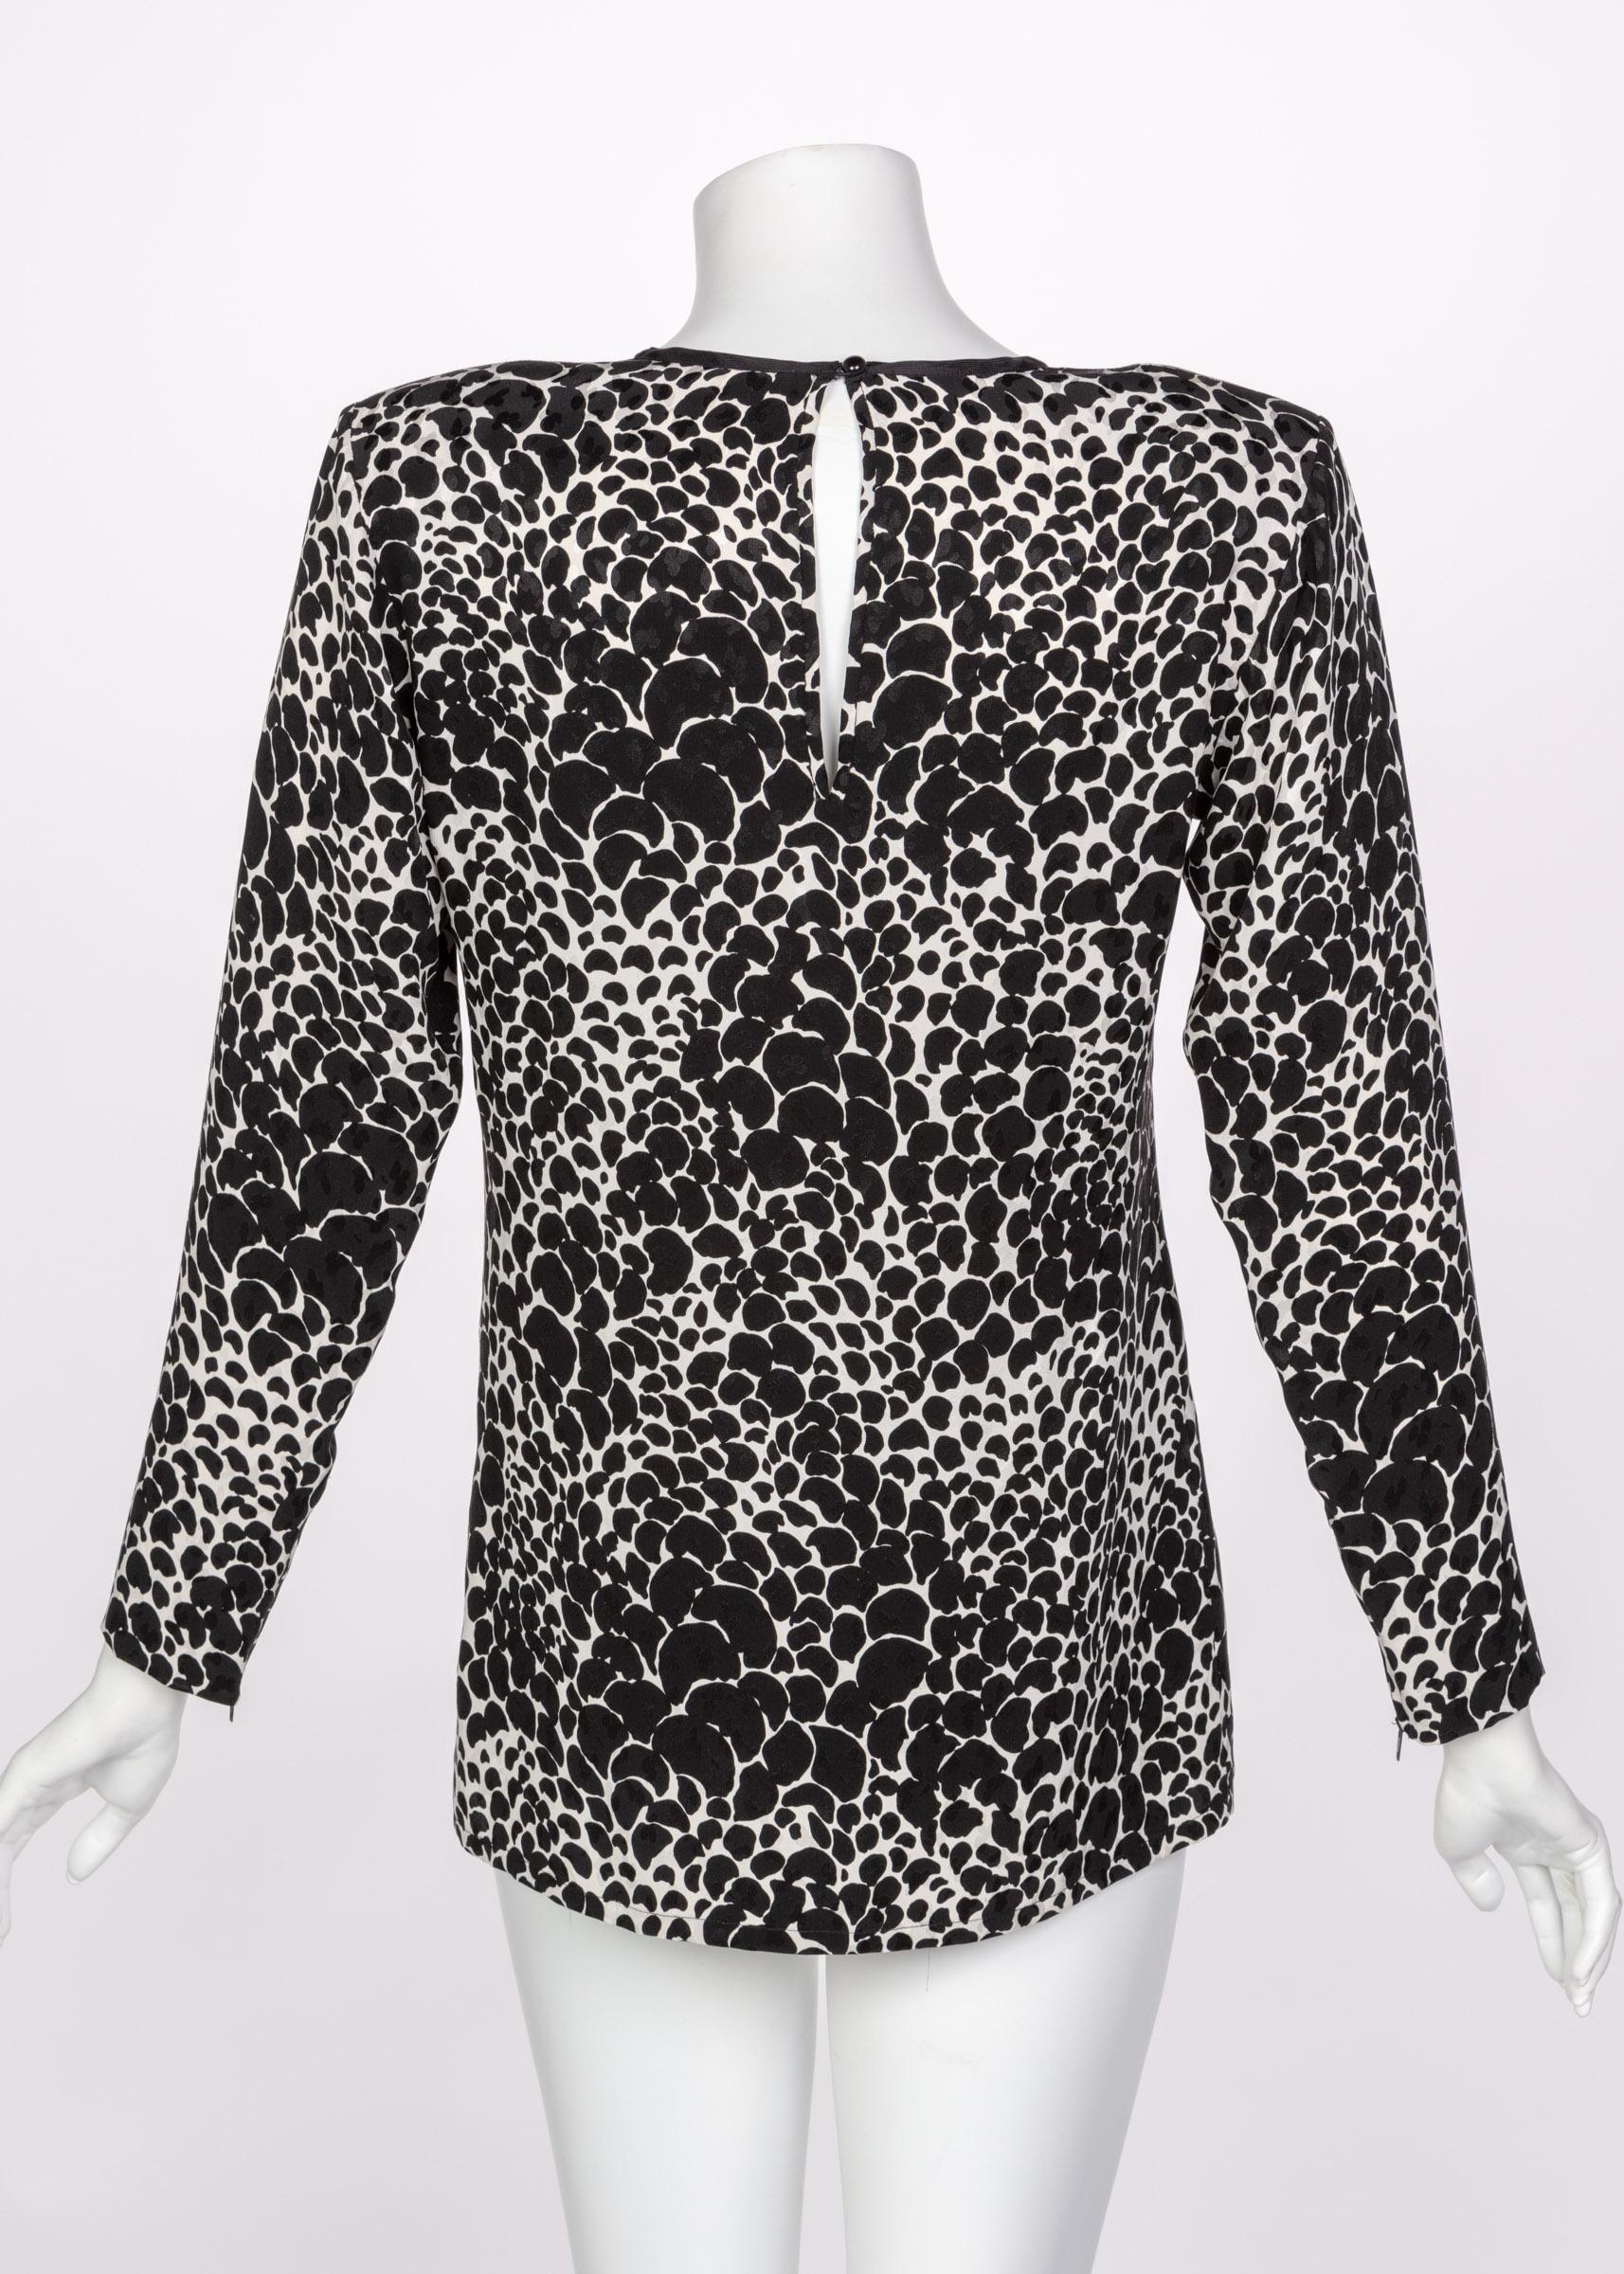 Diese Bluse von Yves Saint Laurent aus den 1970er Jahren aus Seide und mit  schwarz-weißer Fleckendruck. Gepolsterte Schultern. Ungefüttert diese  bluse rutscht über den Kopf  und wird am Hals mit einem runden schwarzen Kunststoffknopf geschlossen.